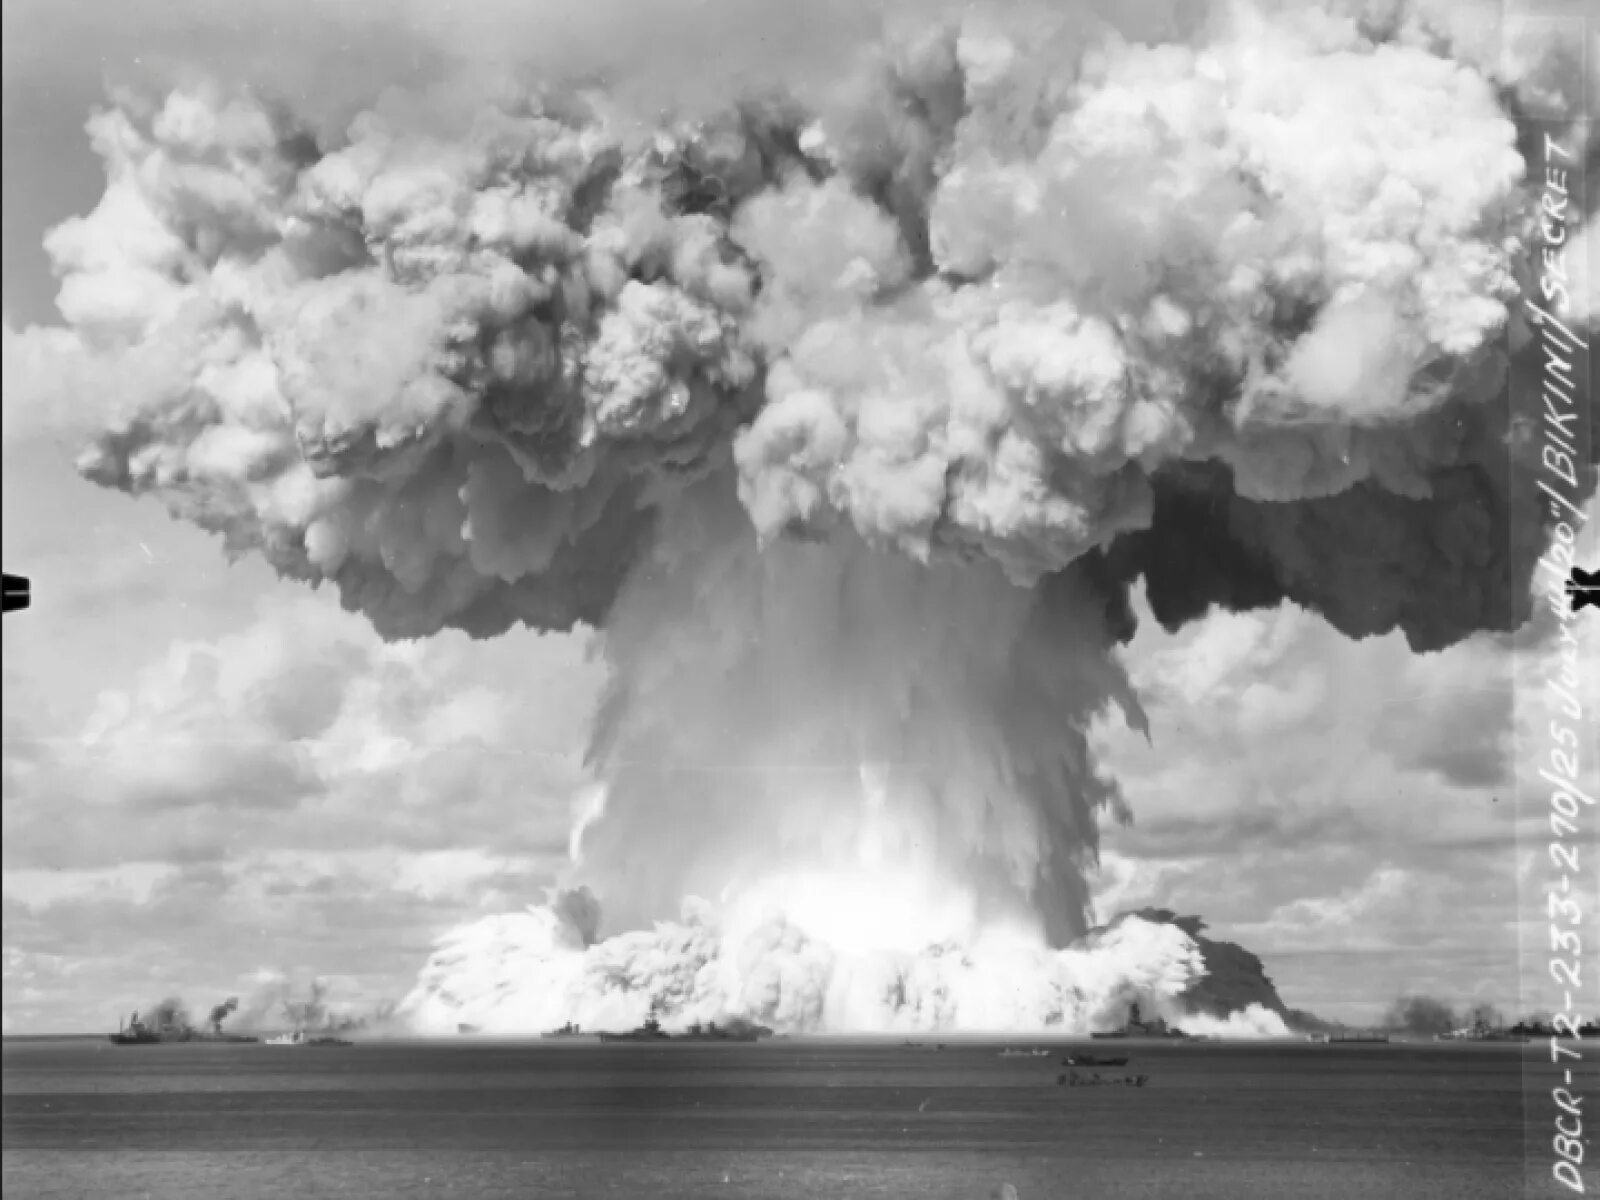 Сайт ядерного взрыва. Атолл бикини взрыв атомной бомбы. Ядерный гриб Кастл Браво. Кастл Браво взрыв. Подводный ядерный взрыв на атолле бикини 1946.